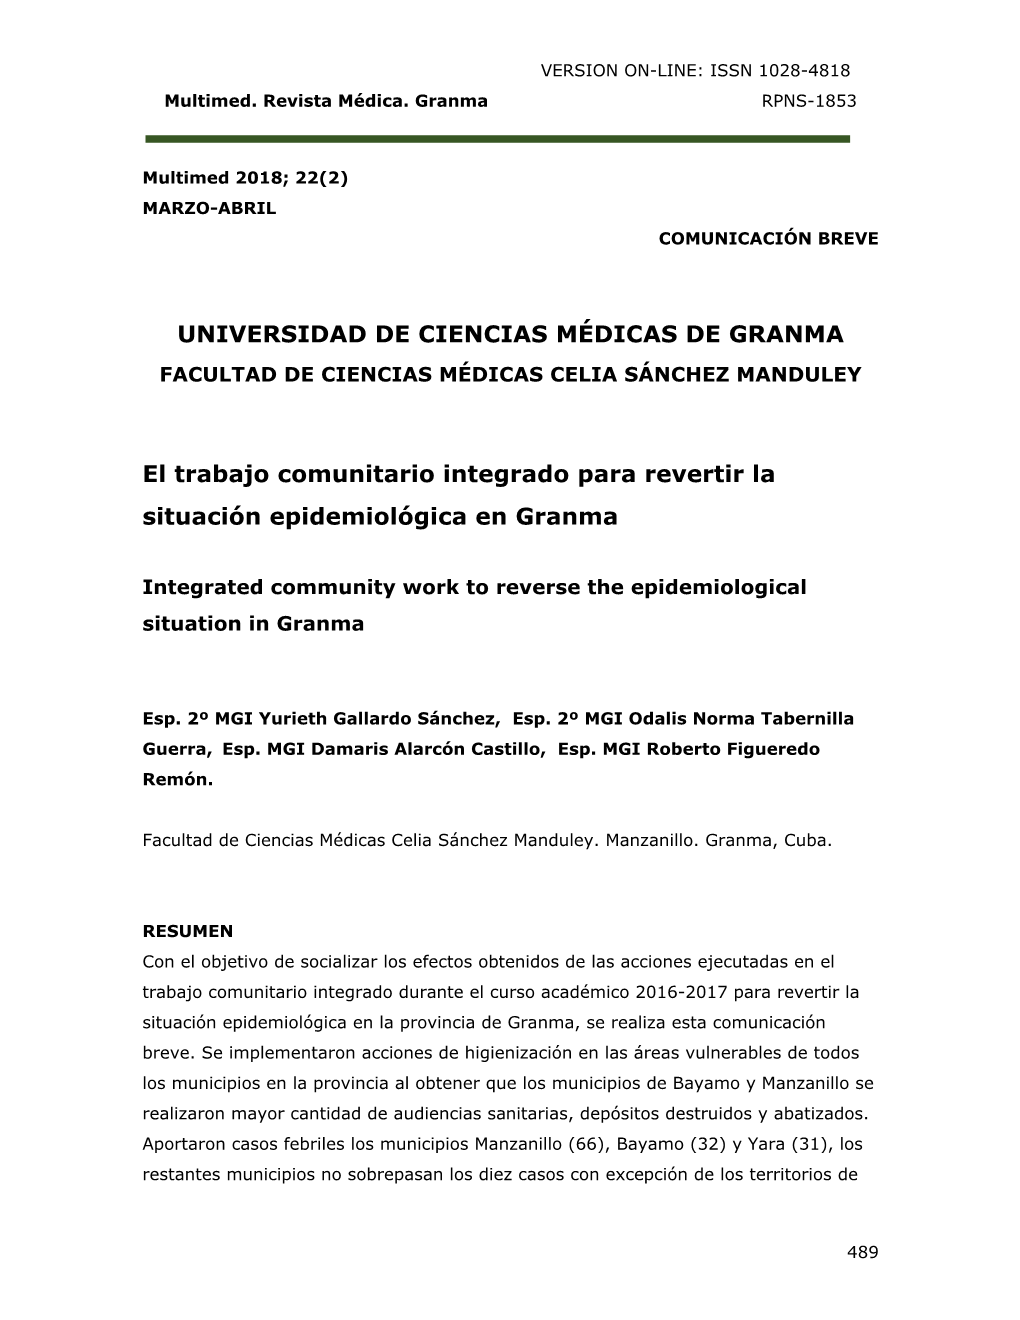 Universidad De Ciencias Médicas De Granma Facultad De Ciencias Médicas Celia Sánchez Manduley